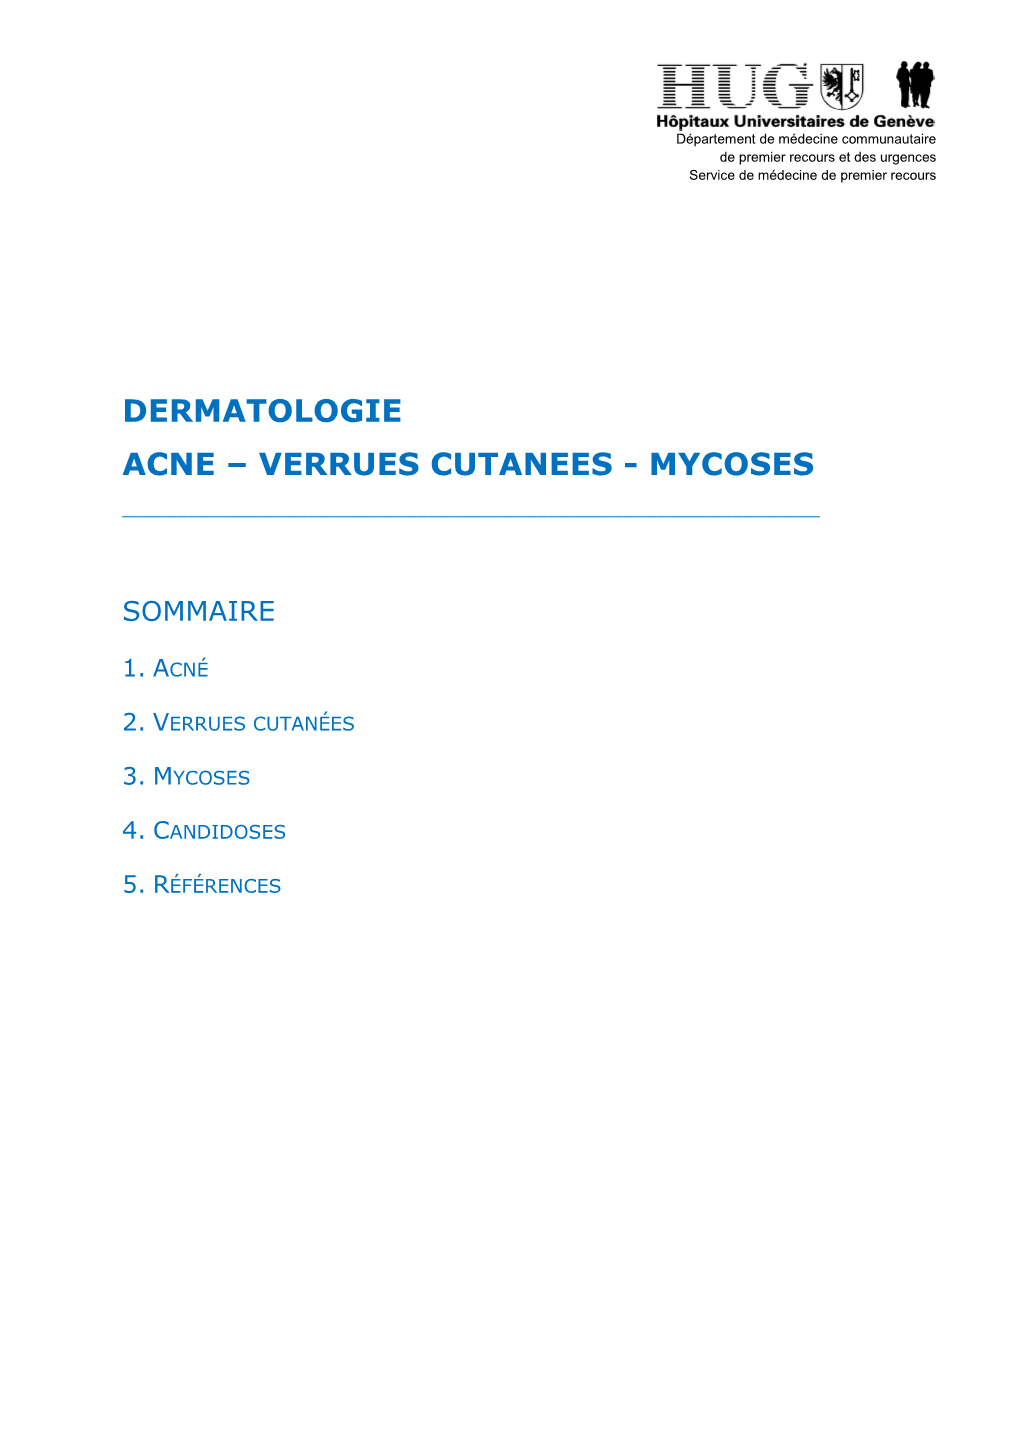 Dermatologie Acne – Verrues Cutanees - Mycoses